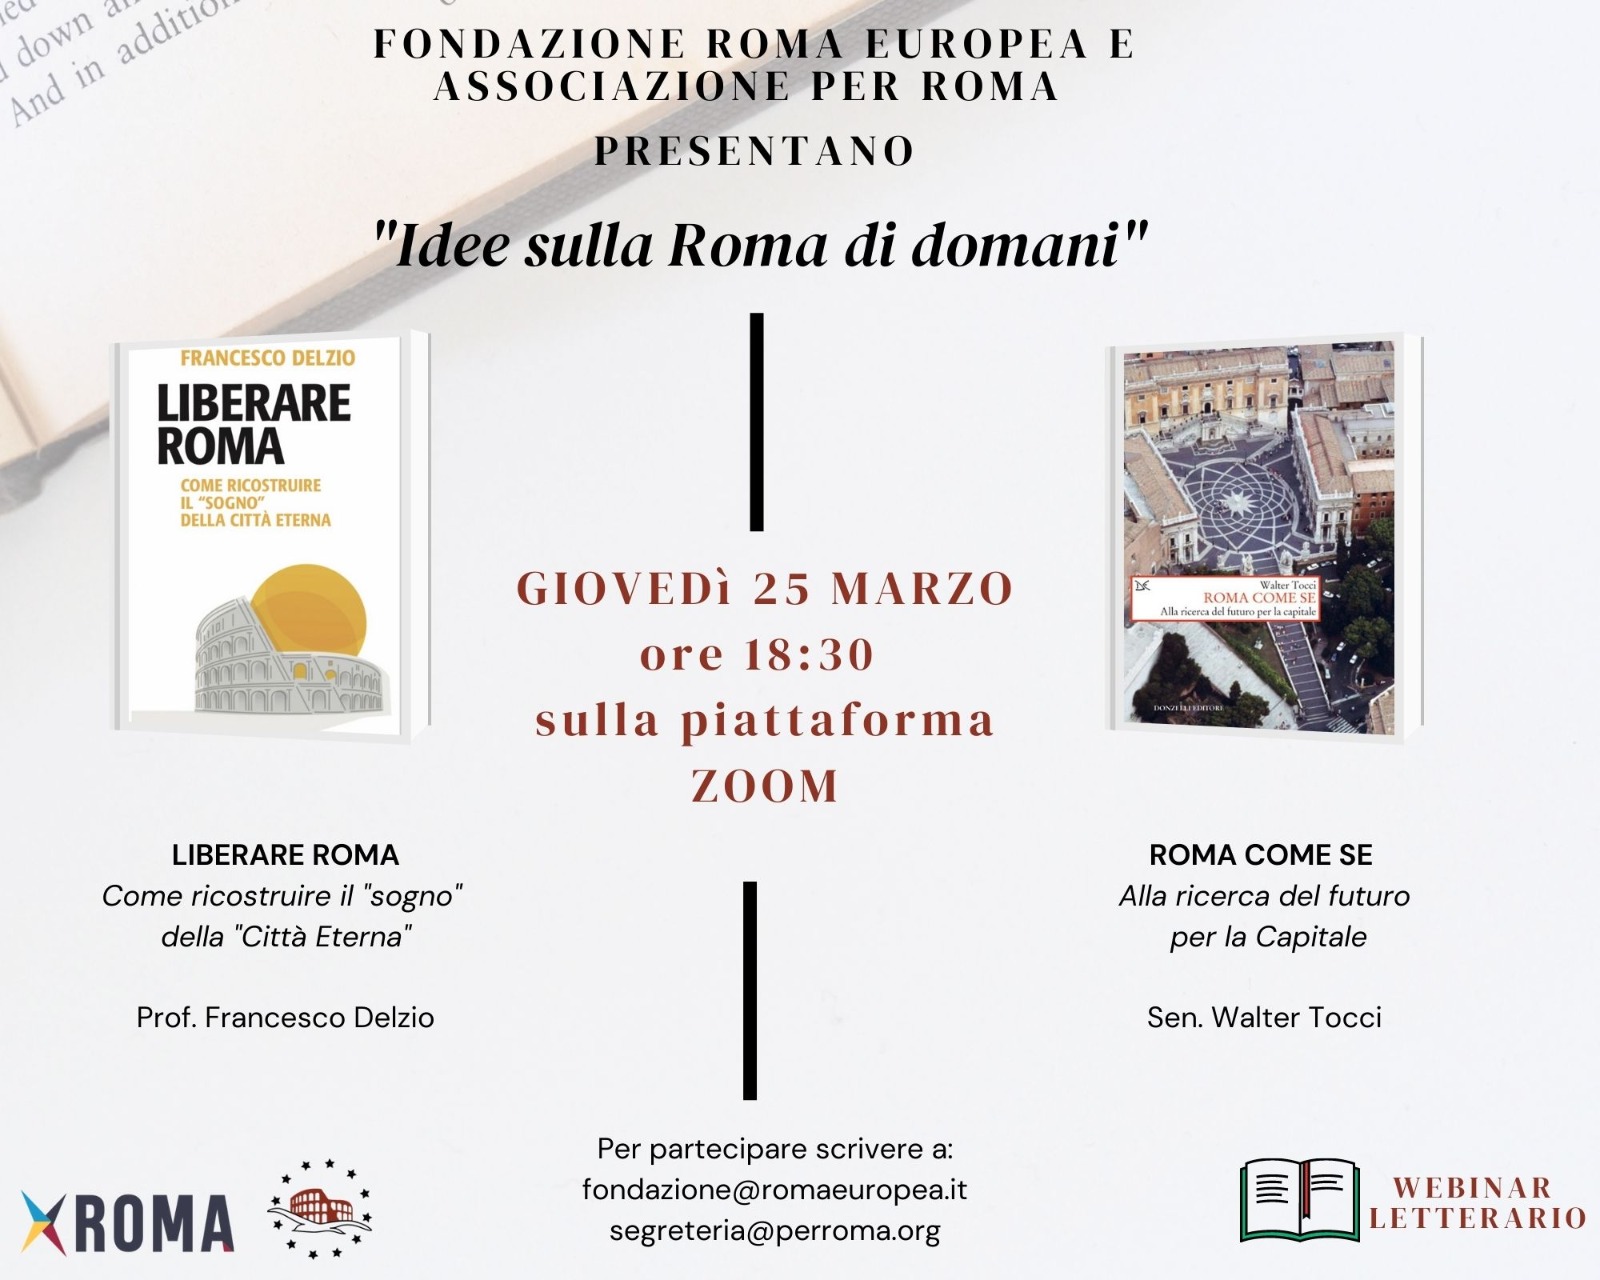 Webinar Letterario – Idee sulla Roma di Domani